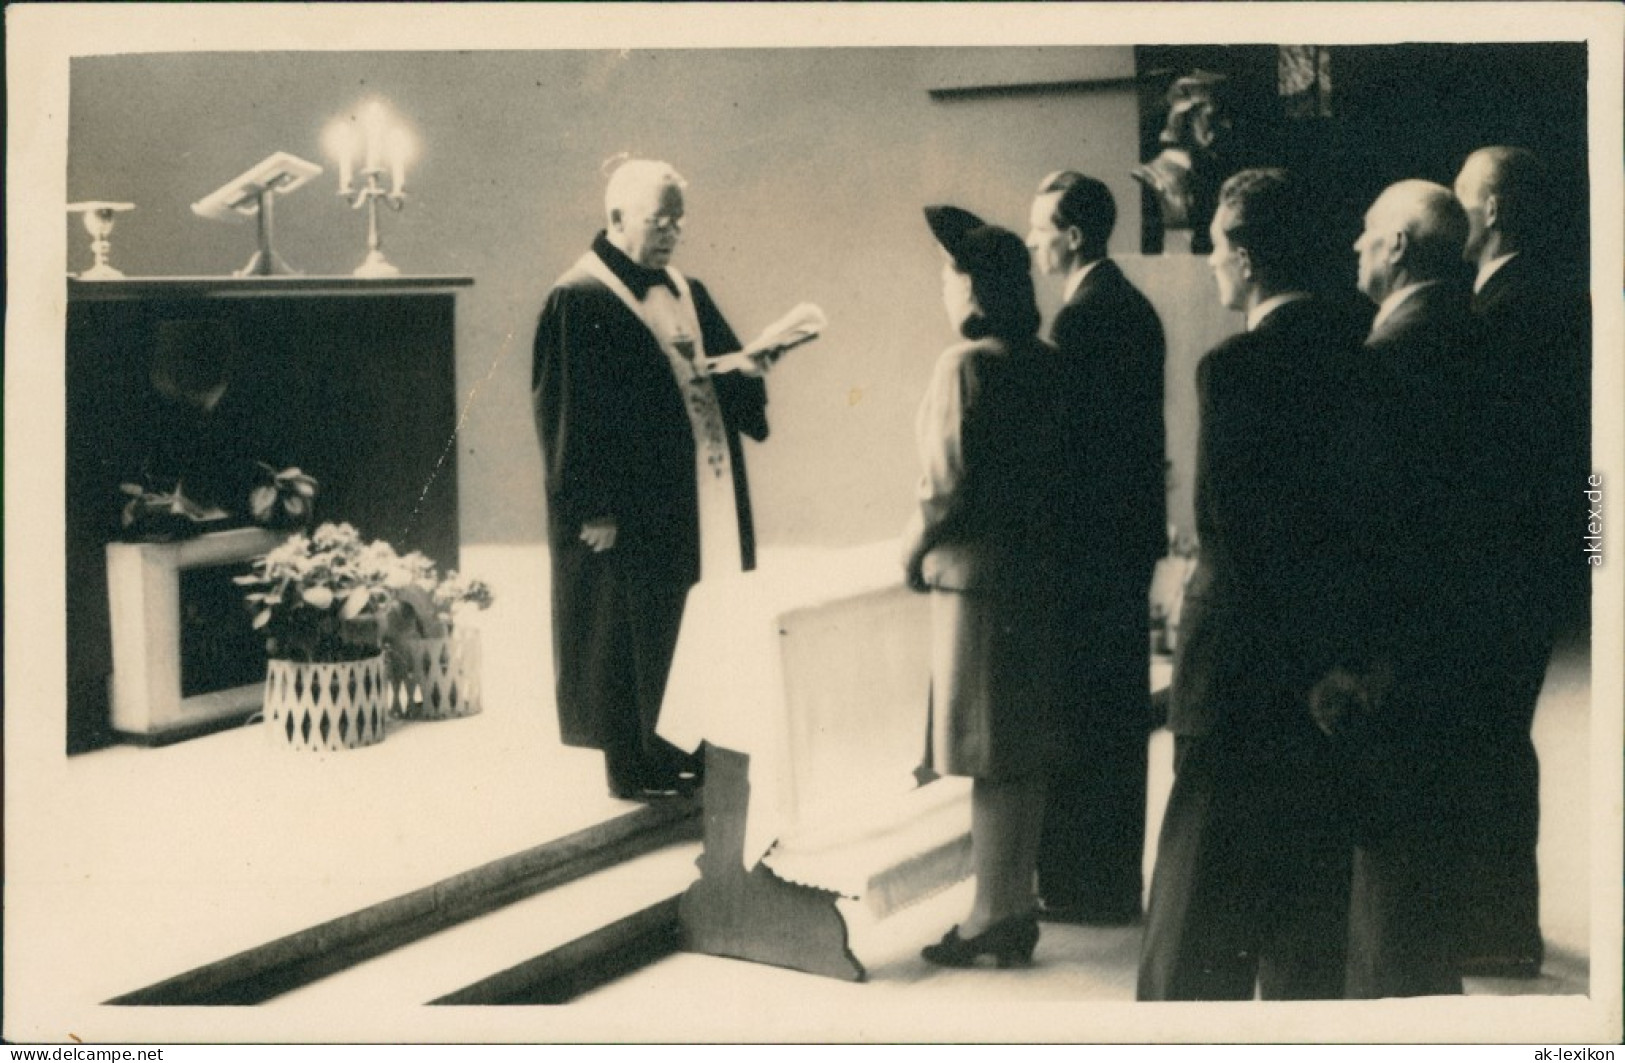  Hochzeit - Gruppenfotos - Trauung Mit Pfarrer Und Trauzeugen 1948 Privatfoto  - Matrimonios